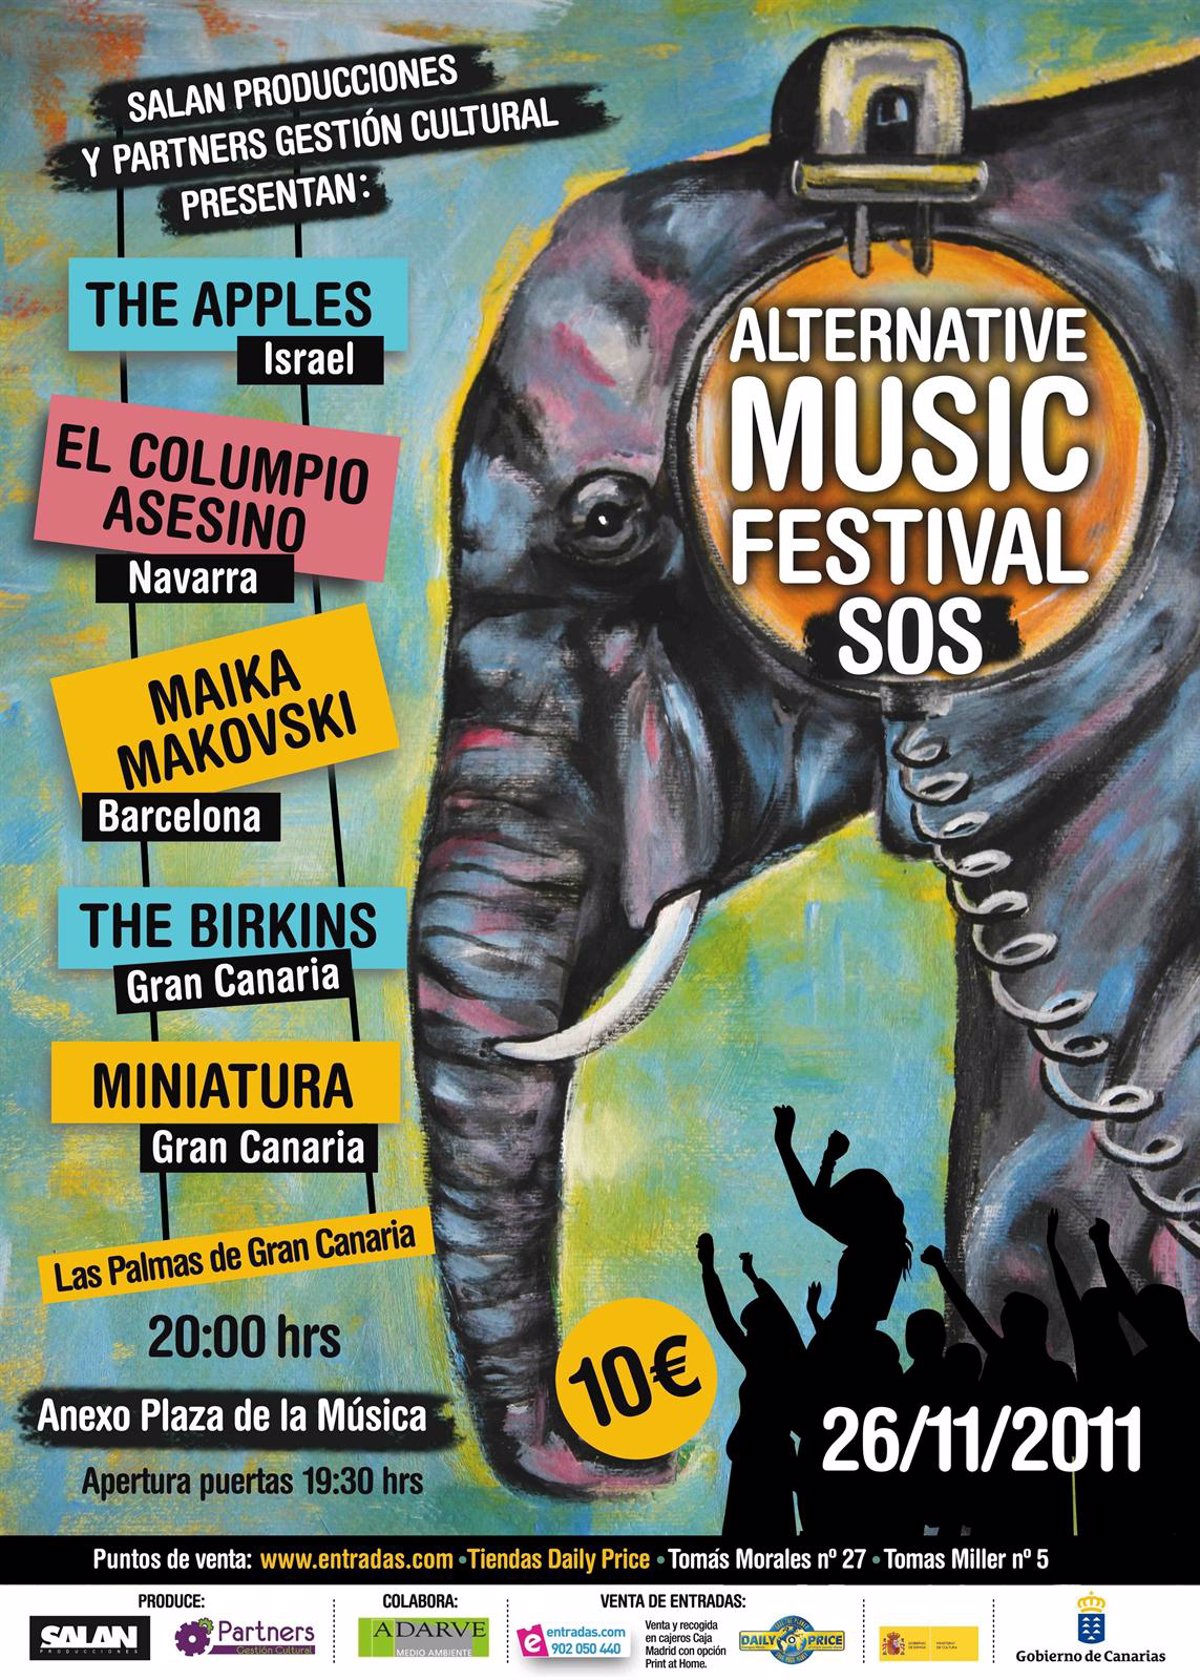 Las Palmas de Gran Canaria acoge este sábado el Alternative Music Festival  SOS